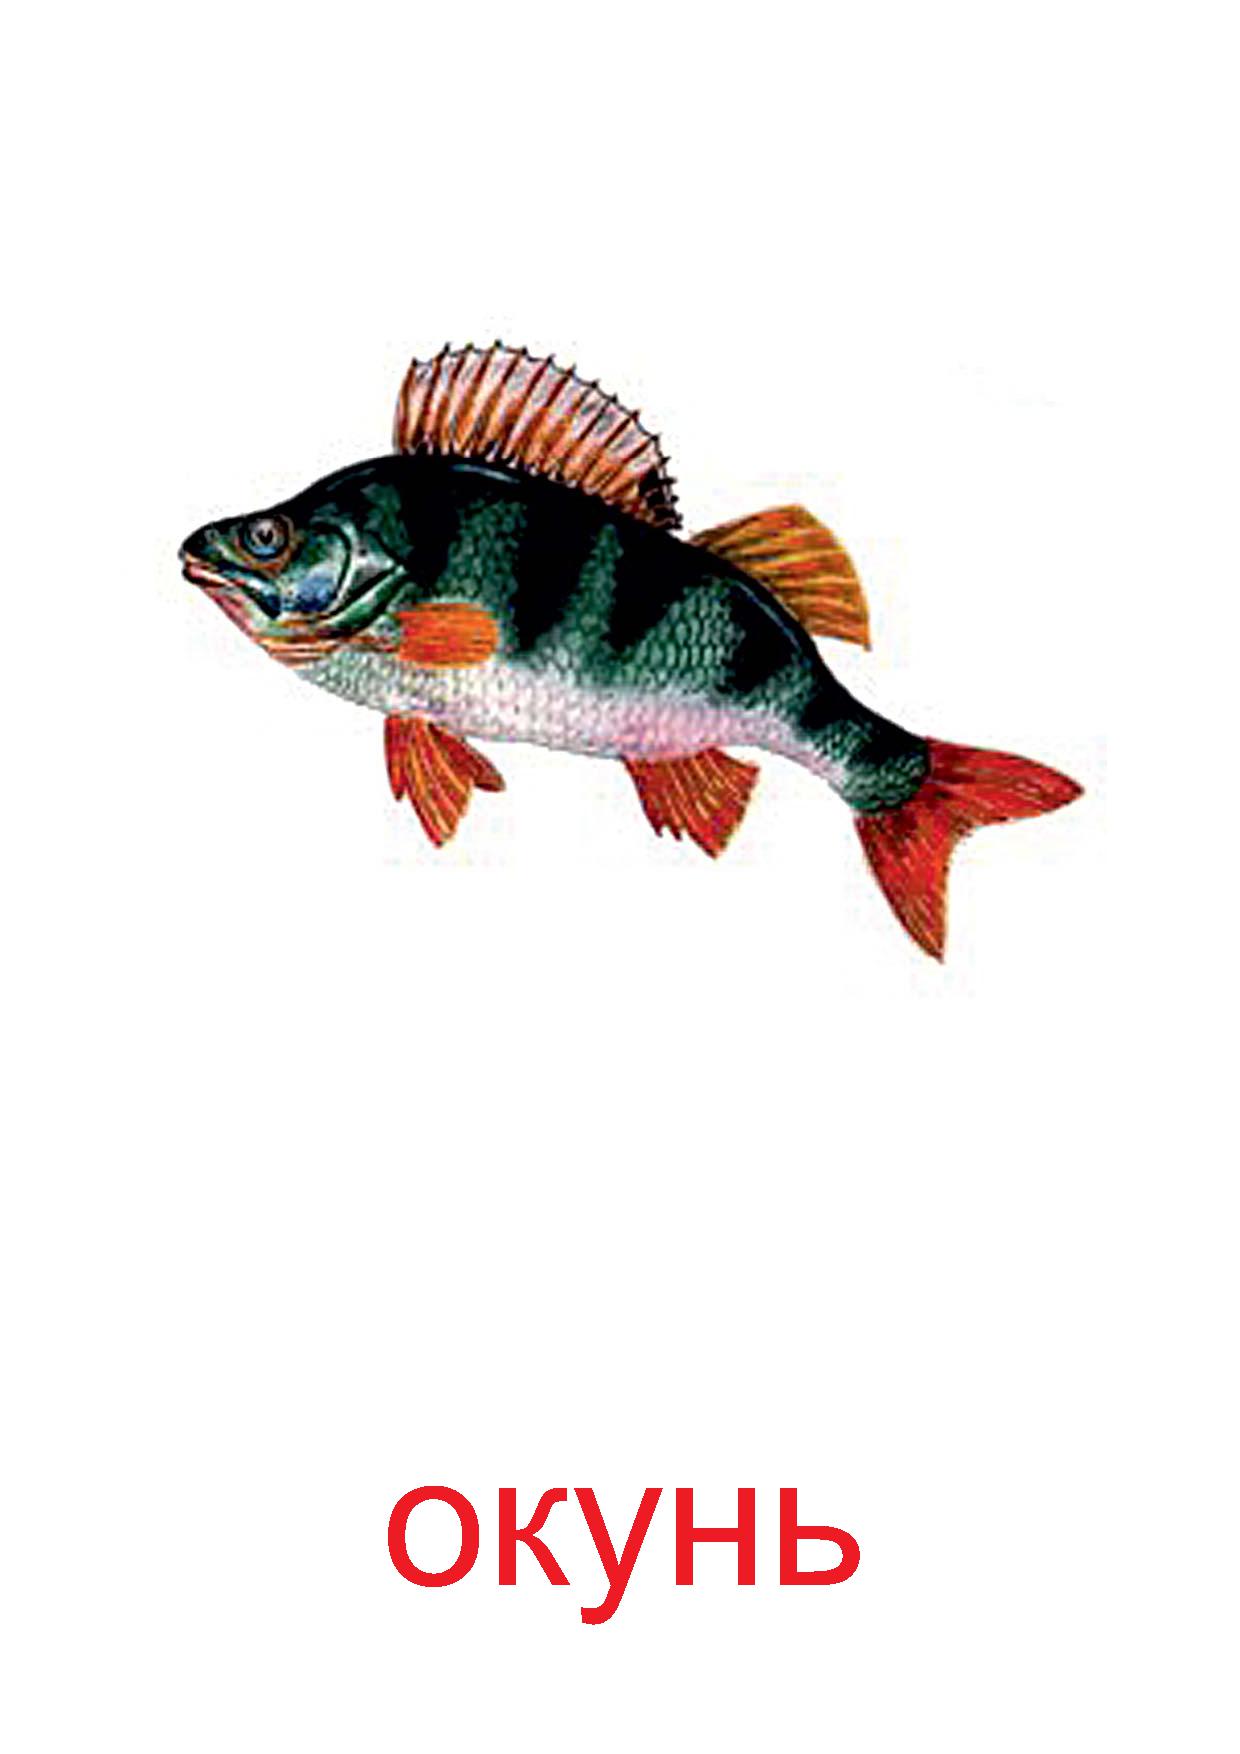 Картинка речные рыбы для детей. Речные рыбы карточки для детей с названиями. Окунь карточка для детей. Карточки рыбы для детей. Рыбы карточки для детей дошкольного возраста.